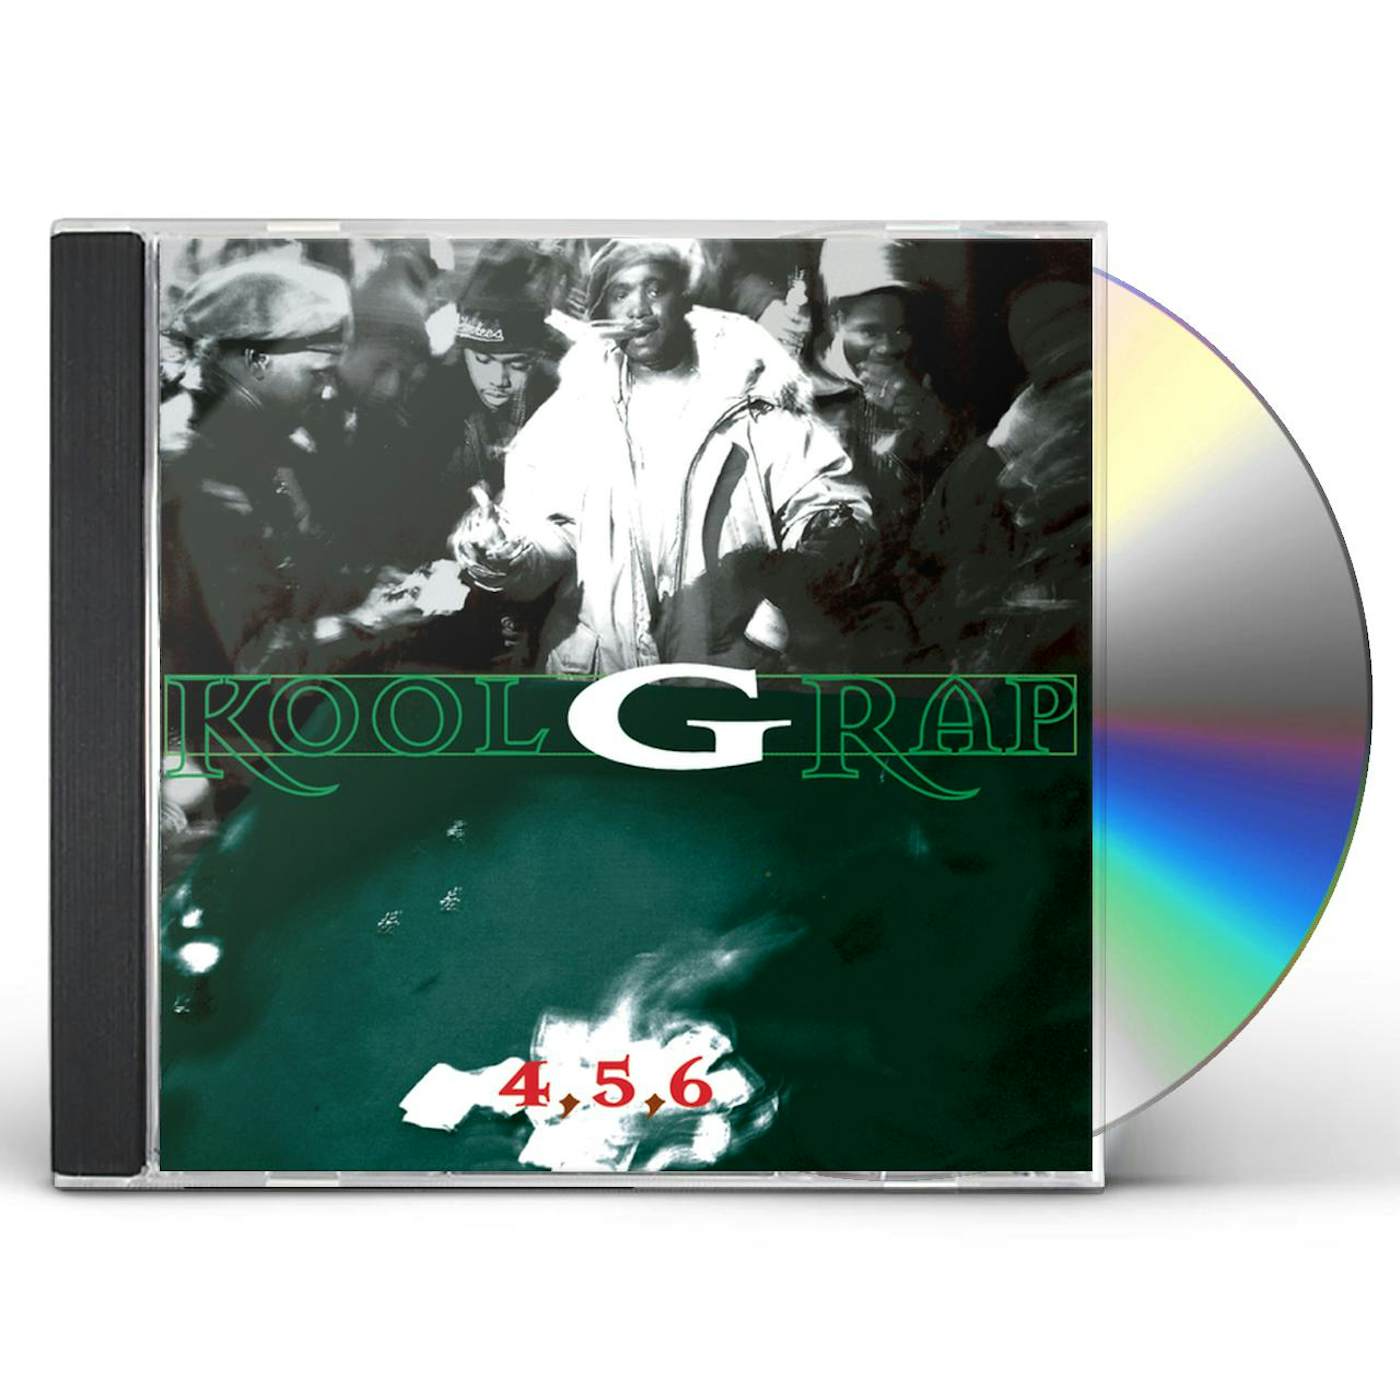 Kool G Rap & DJ Polo 4 5 6 CD